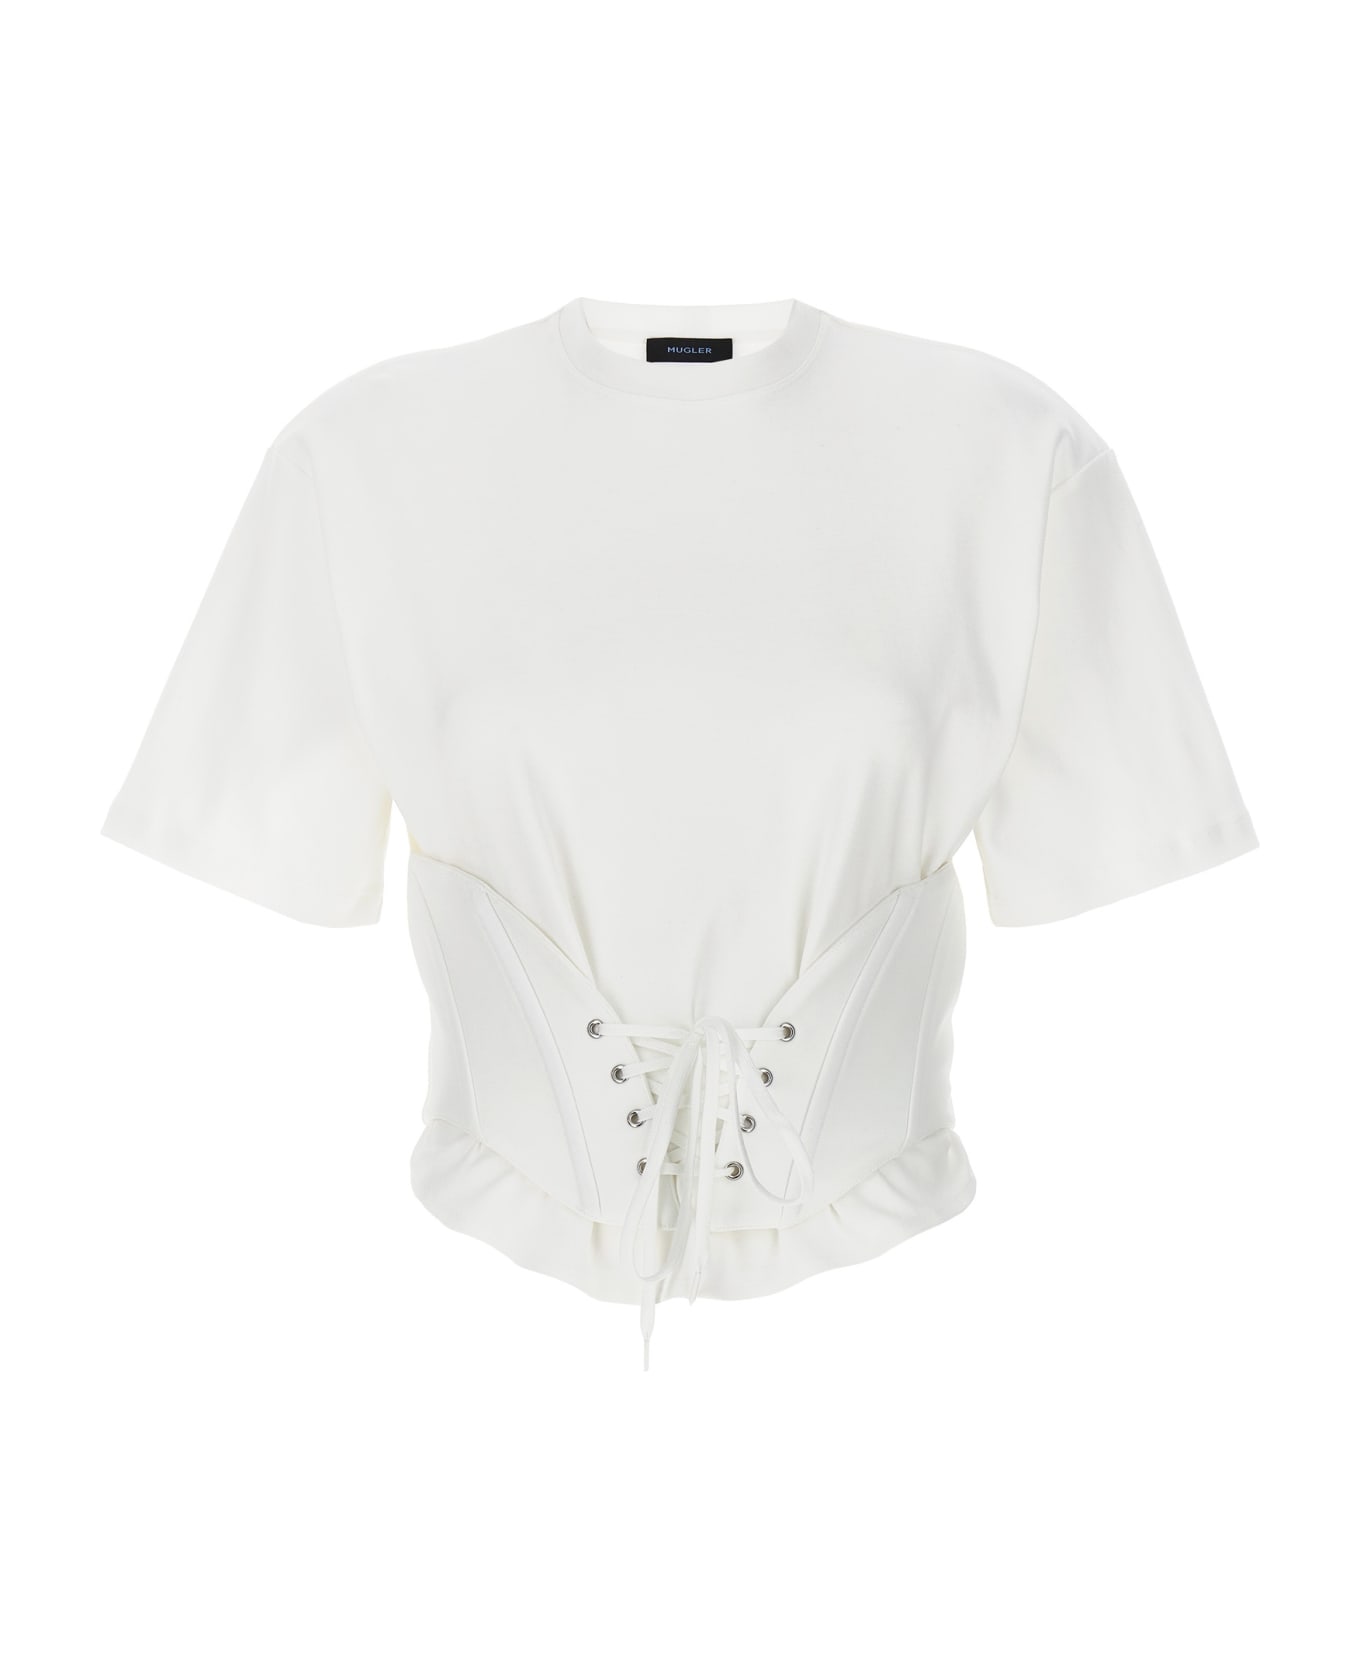 Mugler Corset T-shirt - White Tシャツ